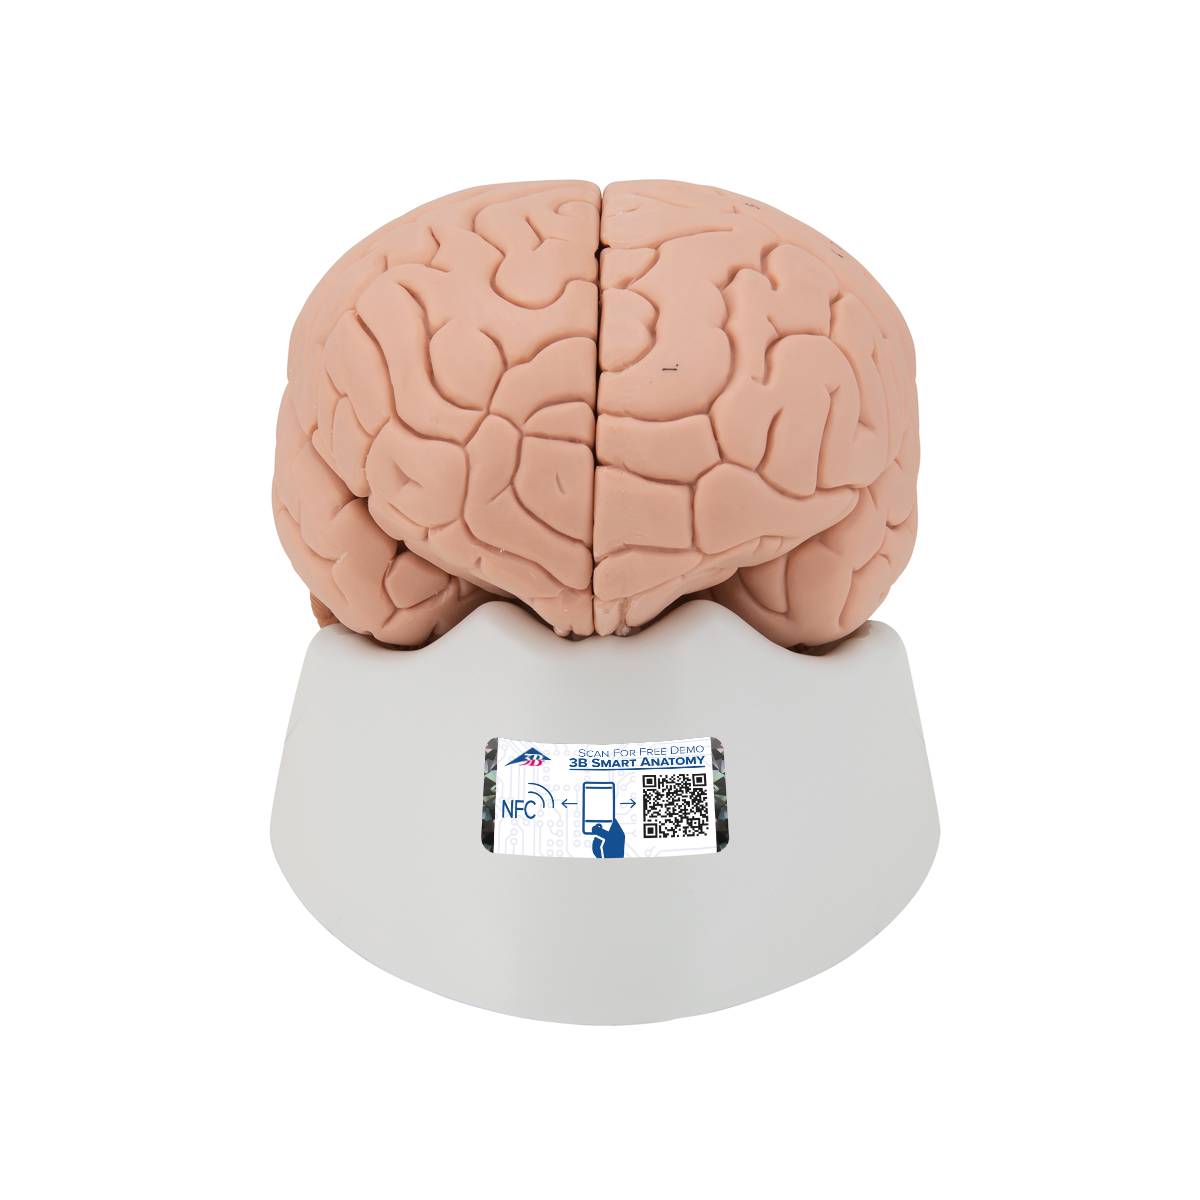 Menschliches Gehirnmodell, 4-teilig - 3B Smart Anatomy, Bestellnummer 1000224, C16, 3B Scientific